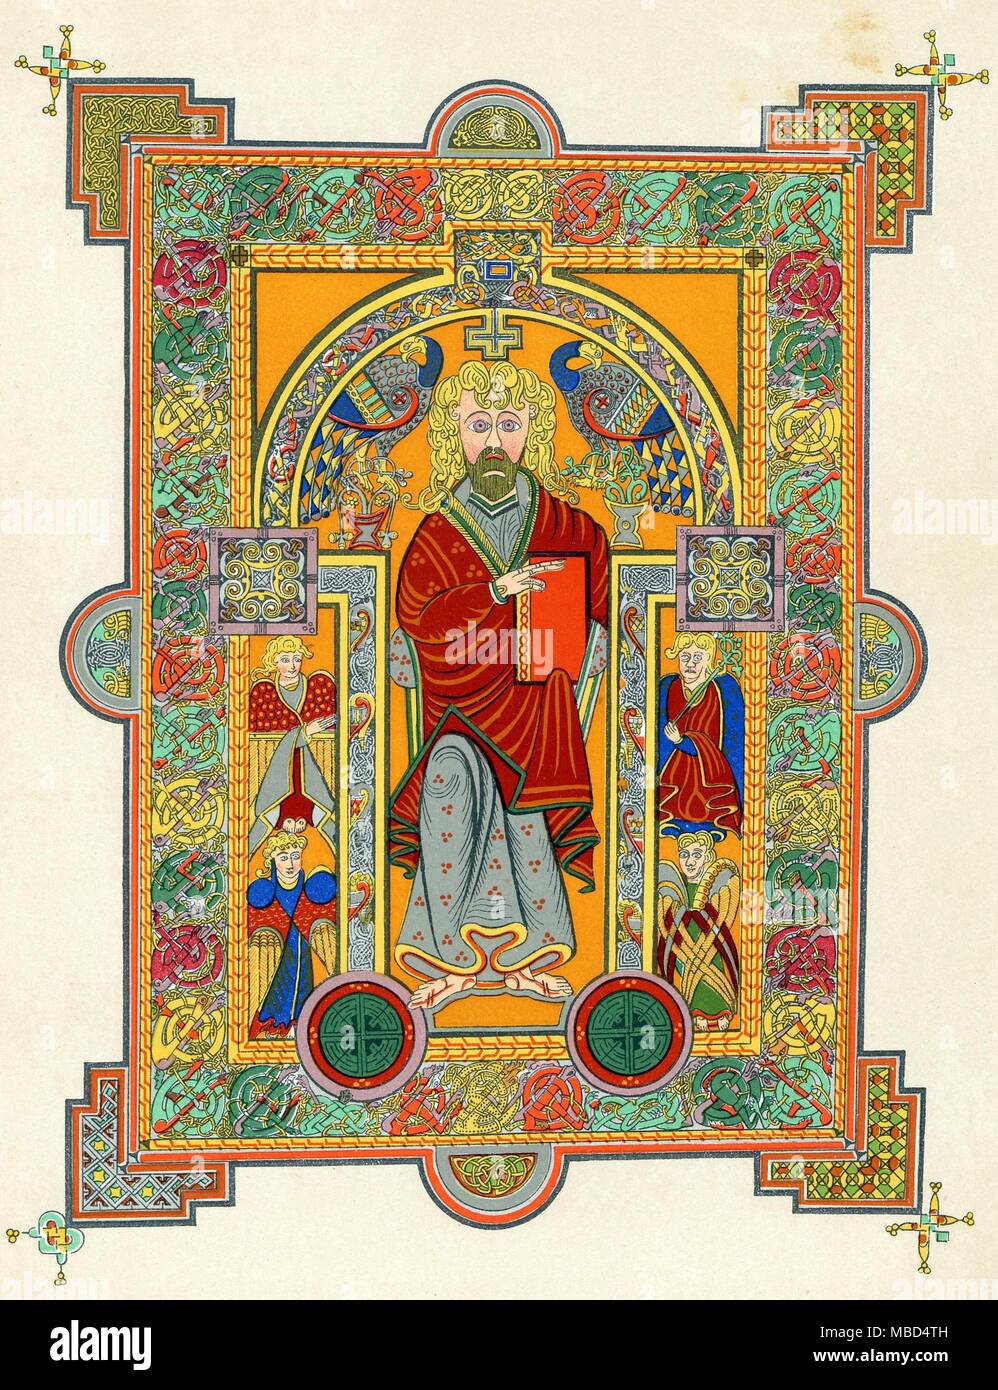 - SAINTS EVANGÉLISTES - Saint Matthieu lithographie du xixe siècle basé sur le Livre de Kells (vers 650-690 AD). Banque D'Images